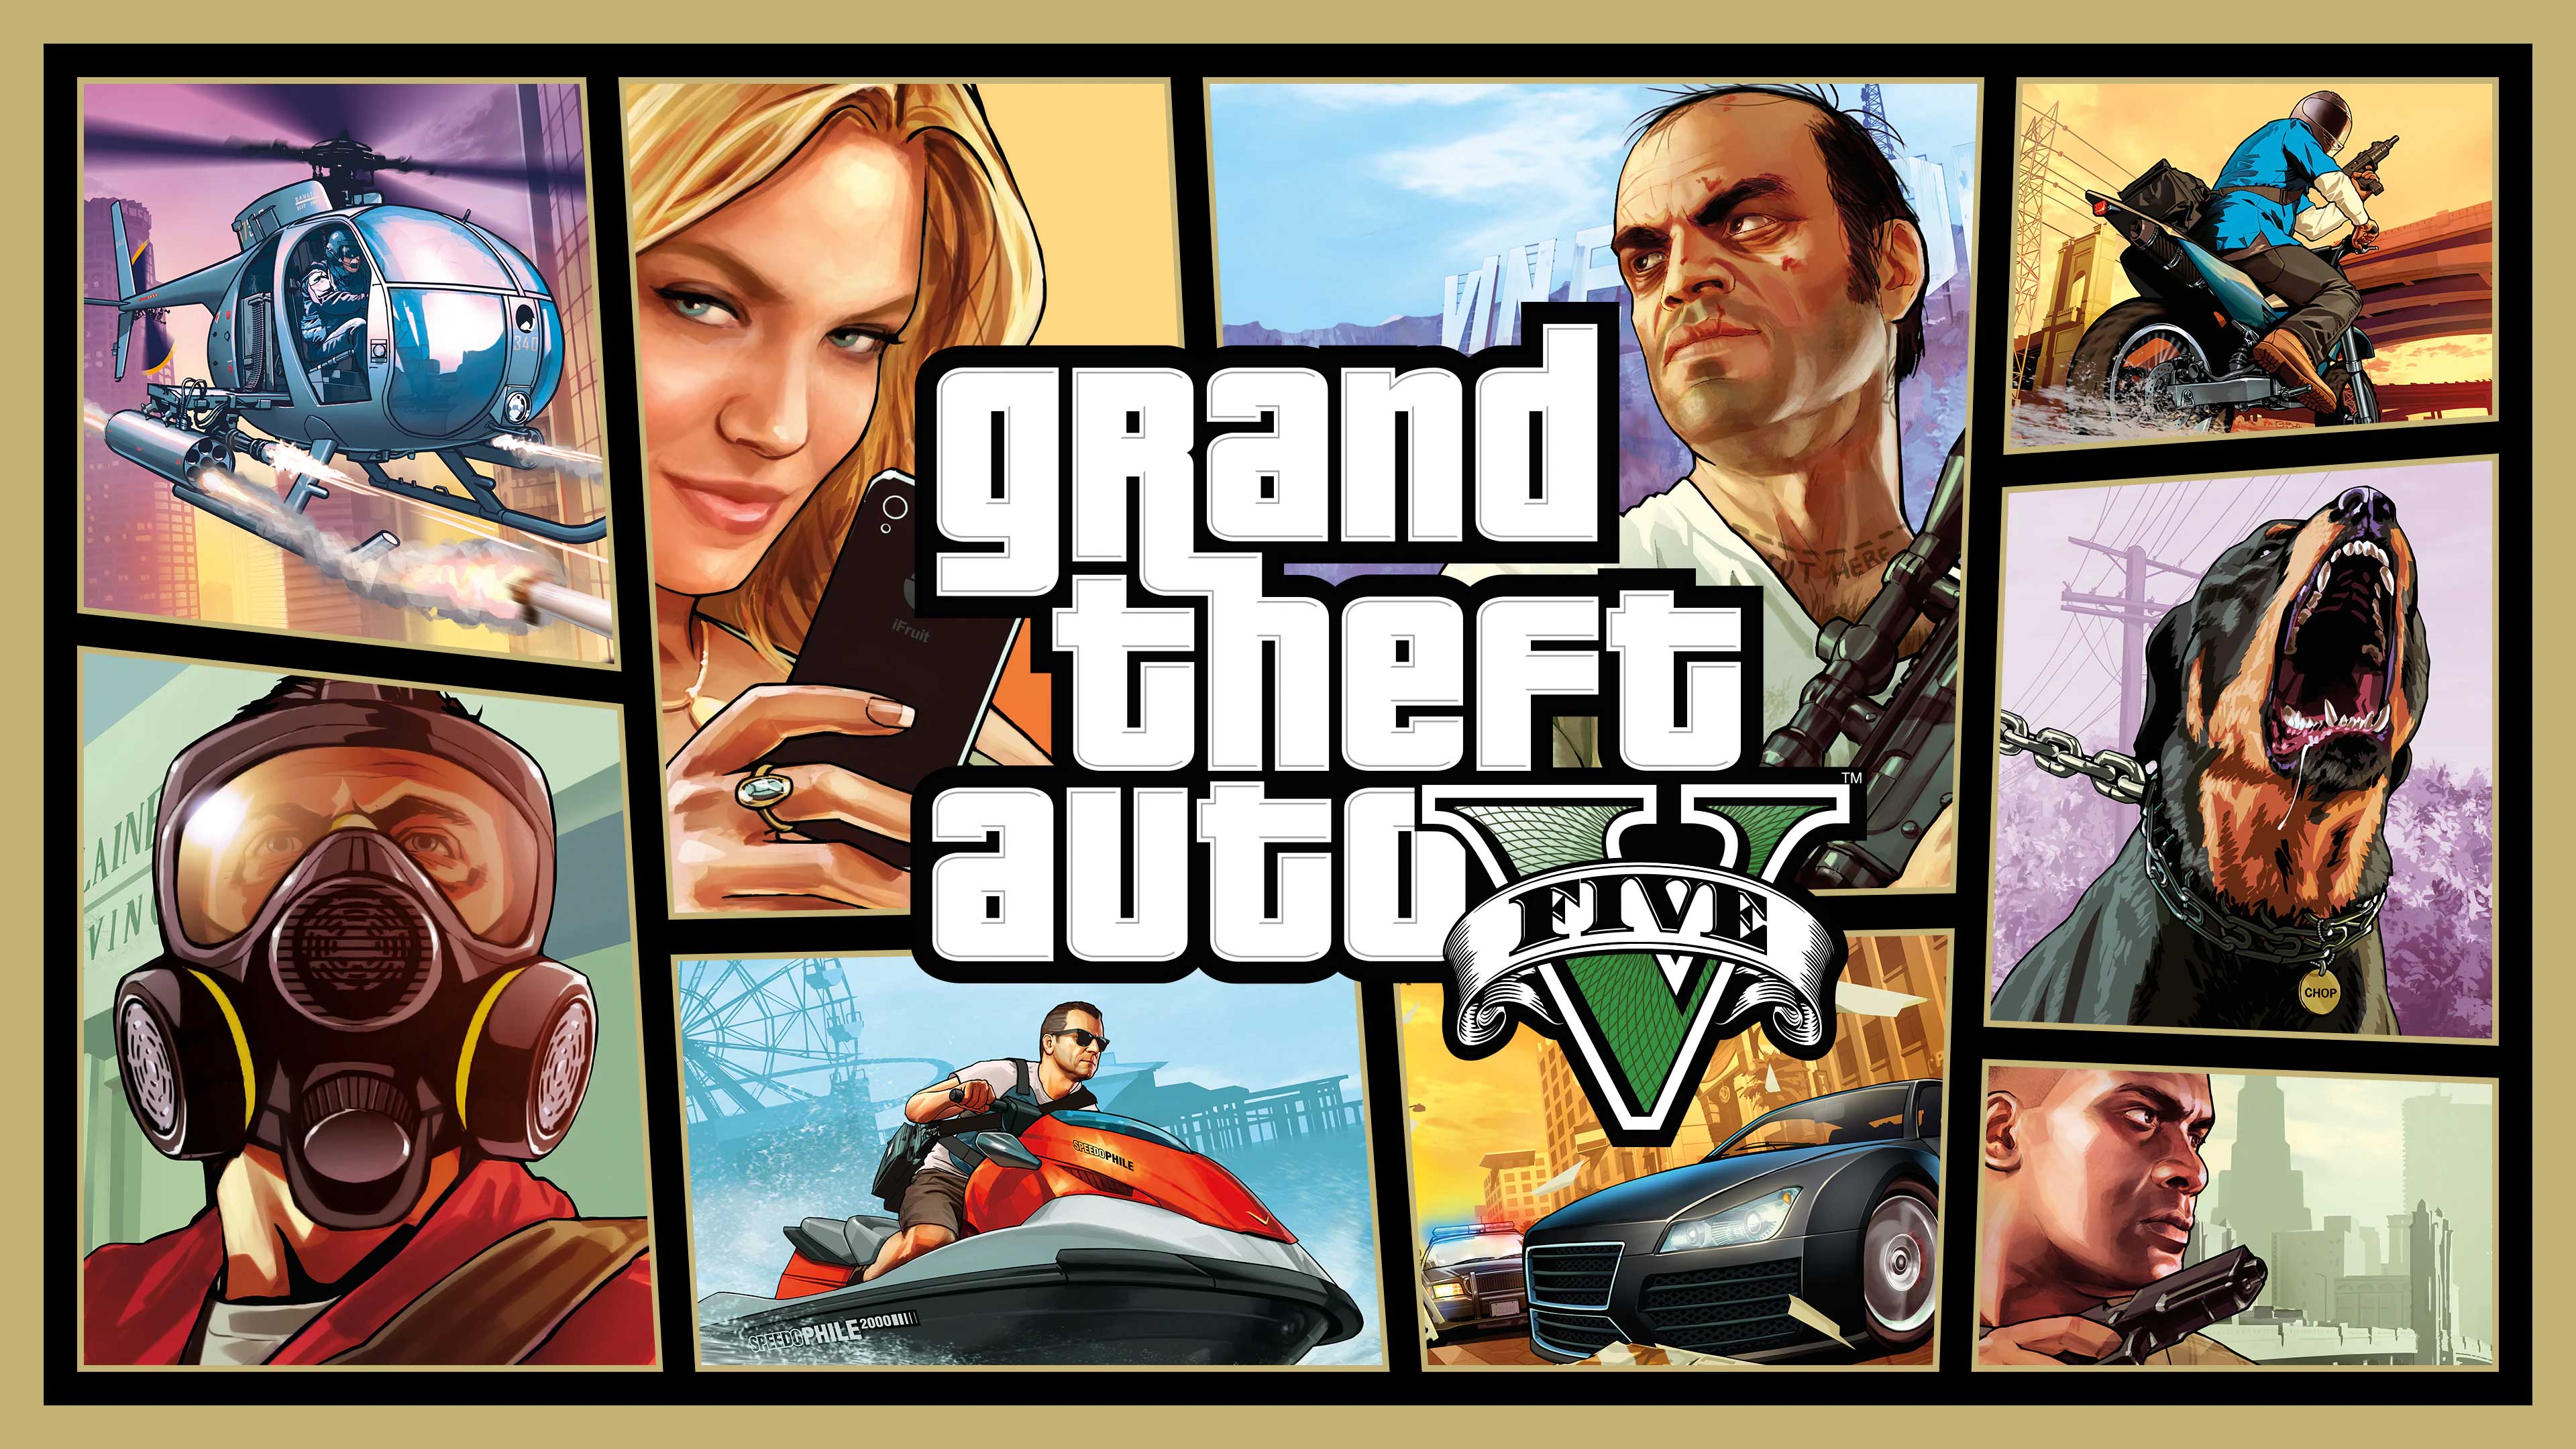 Grand Theft Auto V, The Gamers Fate, thegamersfate.com